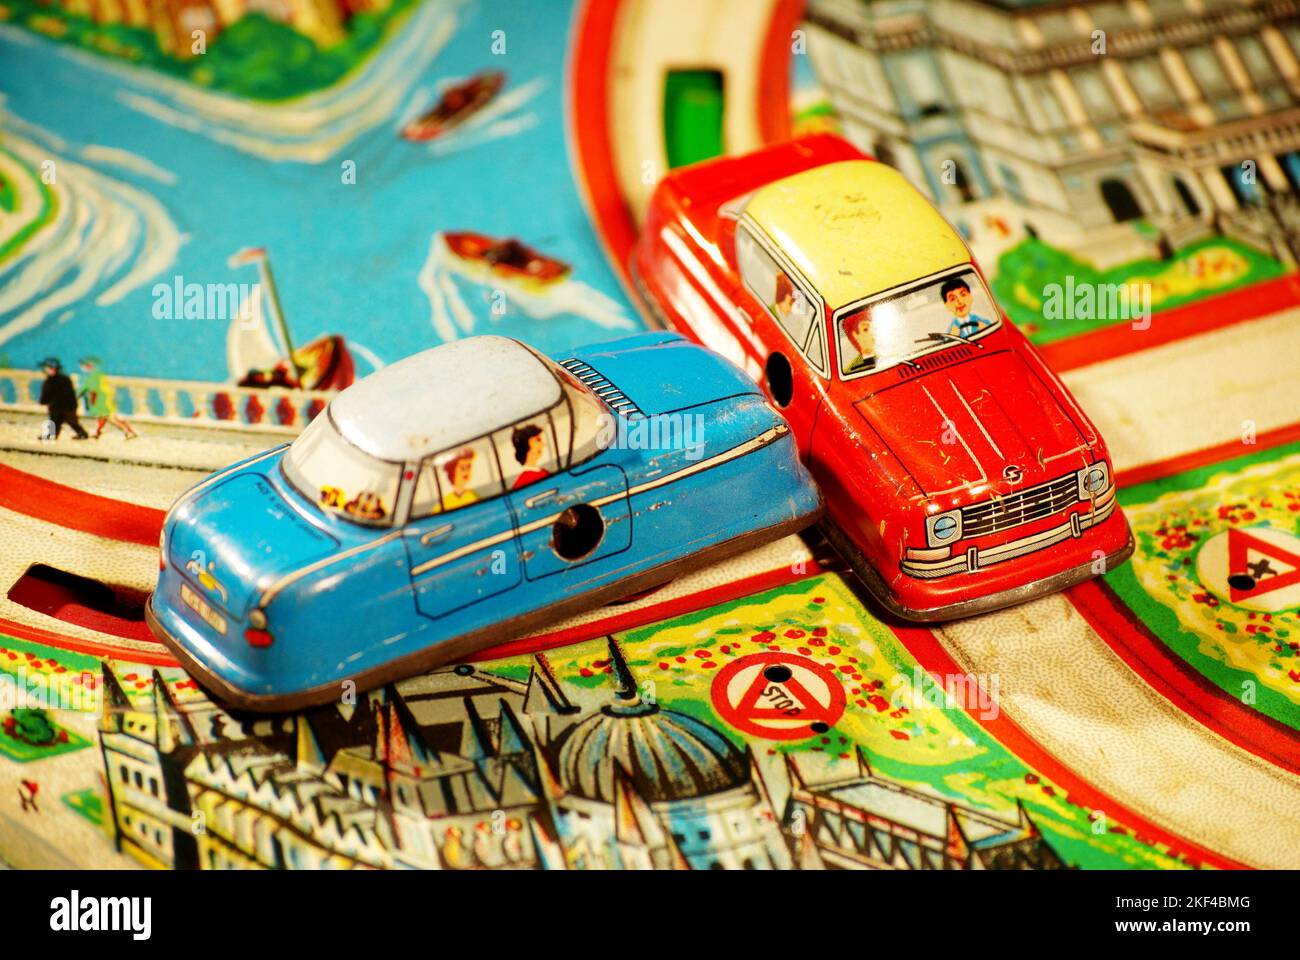 Alt, Blechspielzeug, Nostalgie, Raritaet, Sammler, Strassenverkehr, Automobil, Zusammenstoss auf Kreuzung, dargestellt mit Modellautos aus Blech, Foto Stock